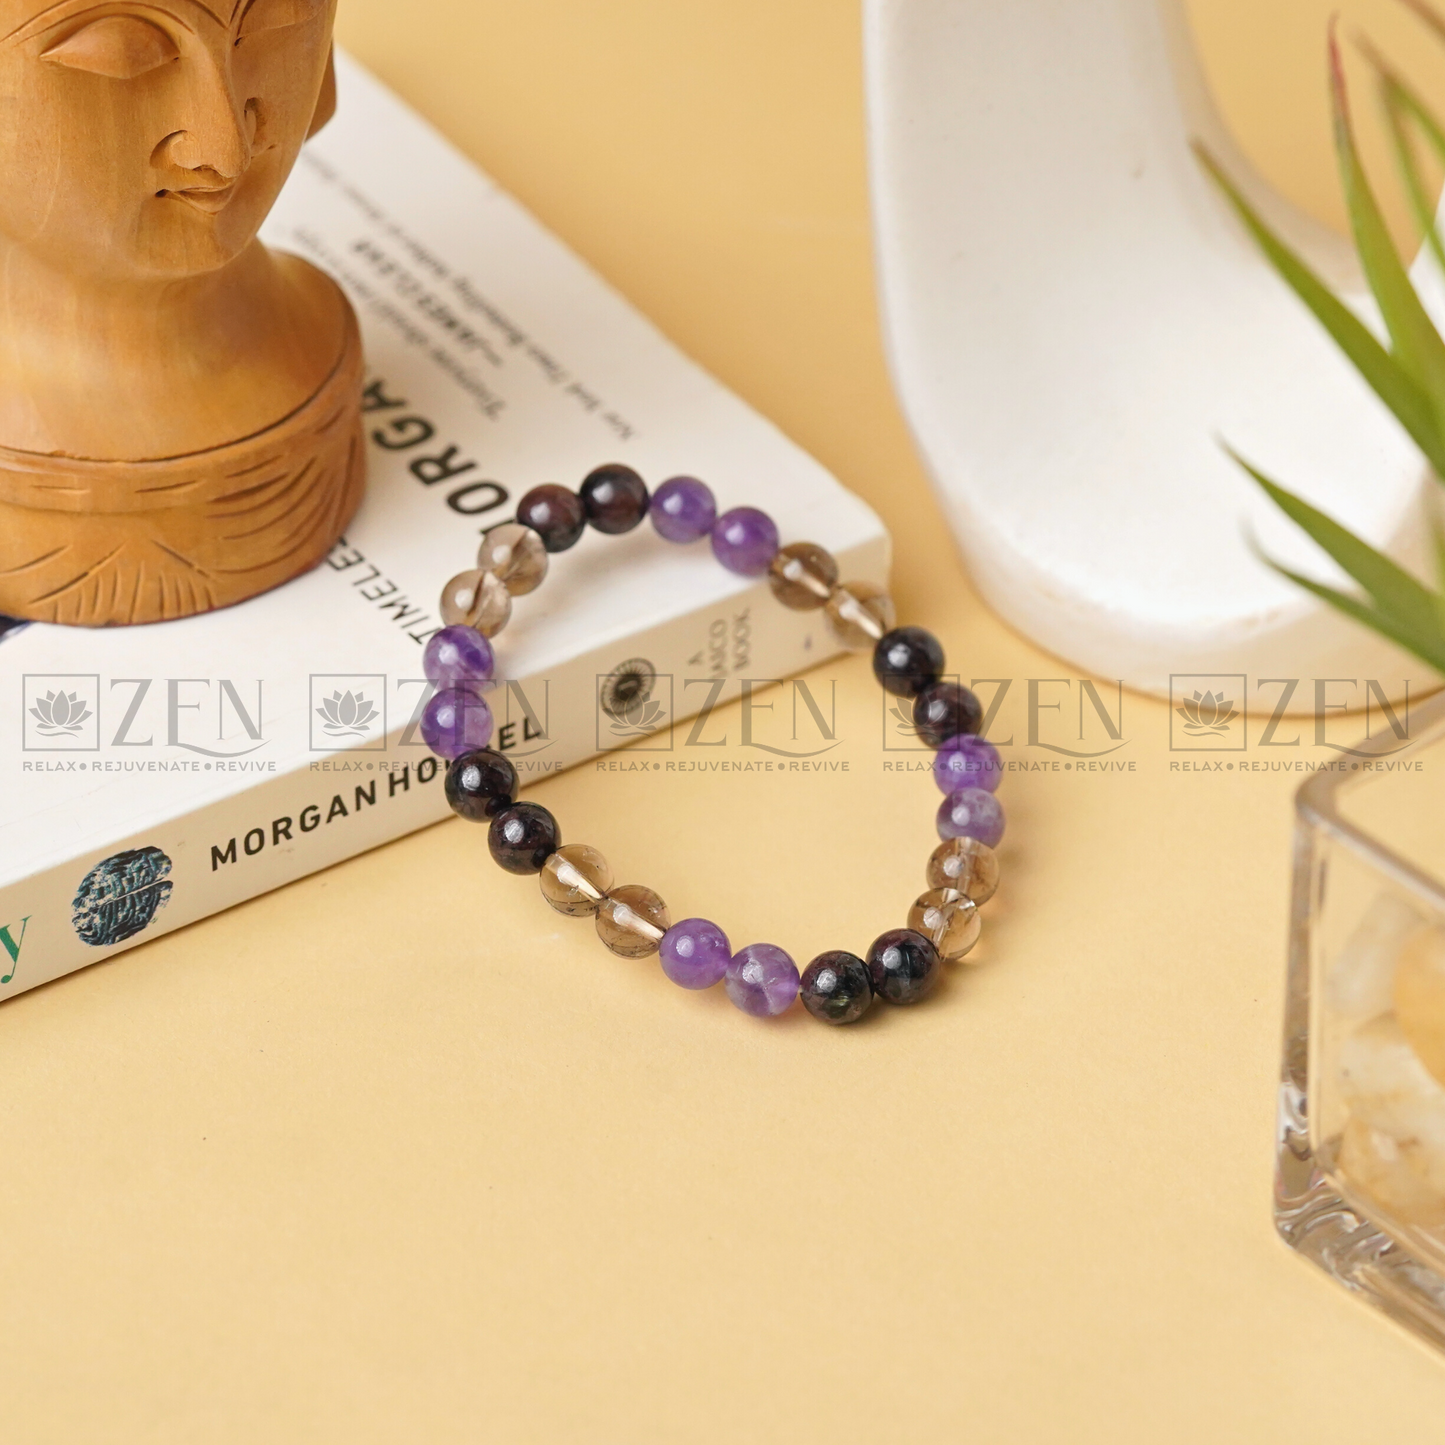 Zen Health Optimizing Bracelet - The Zen Crystals